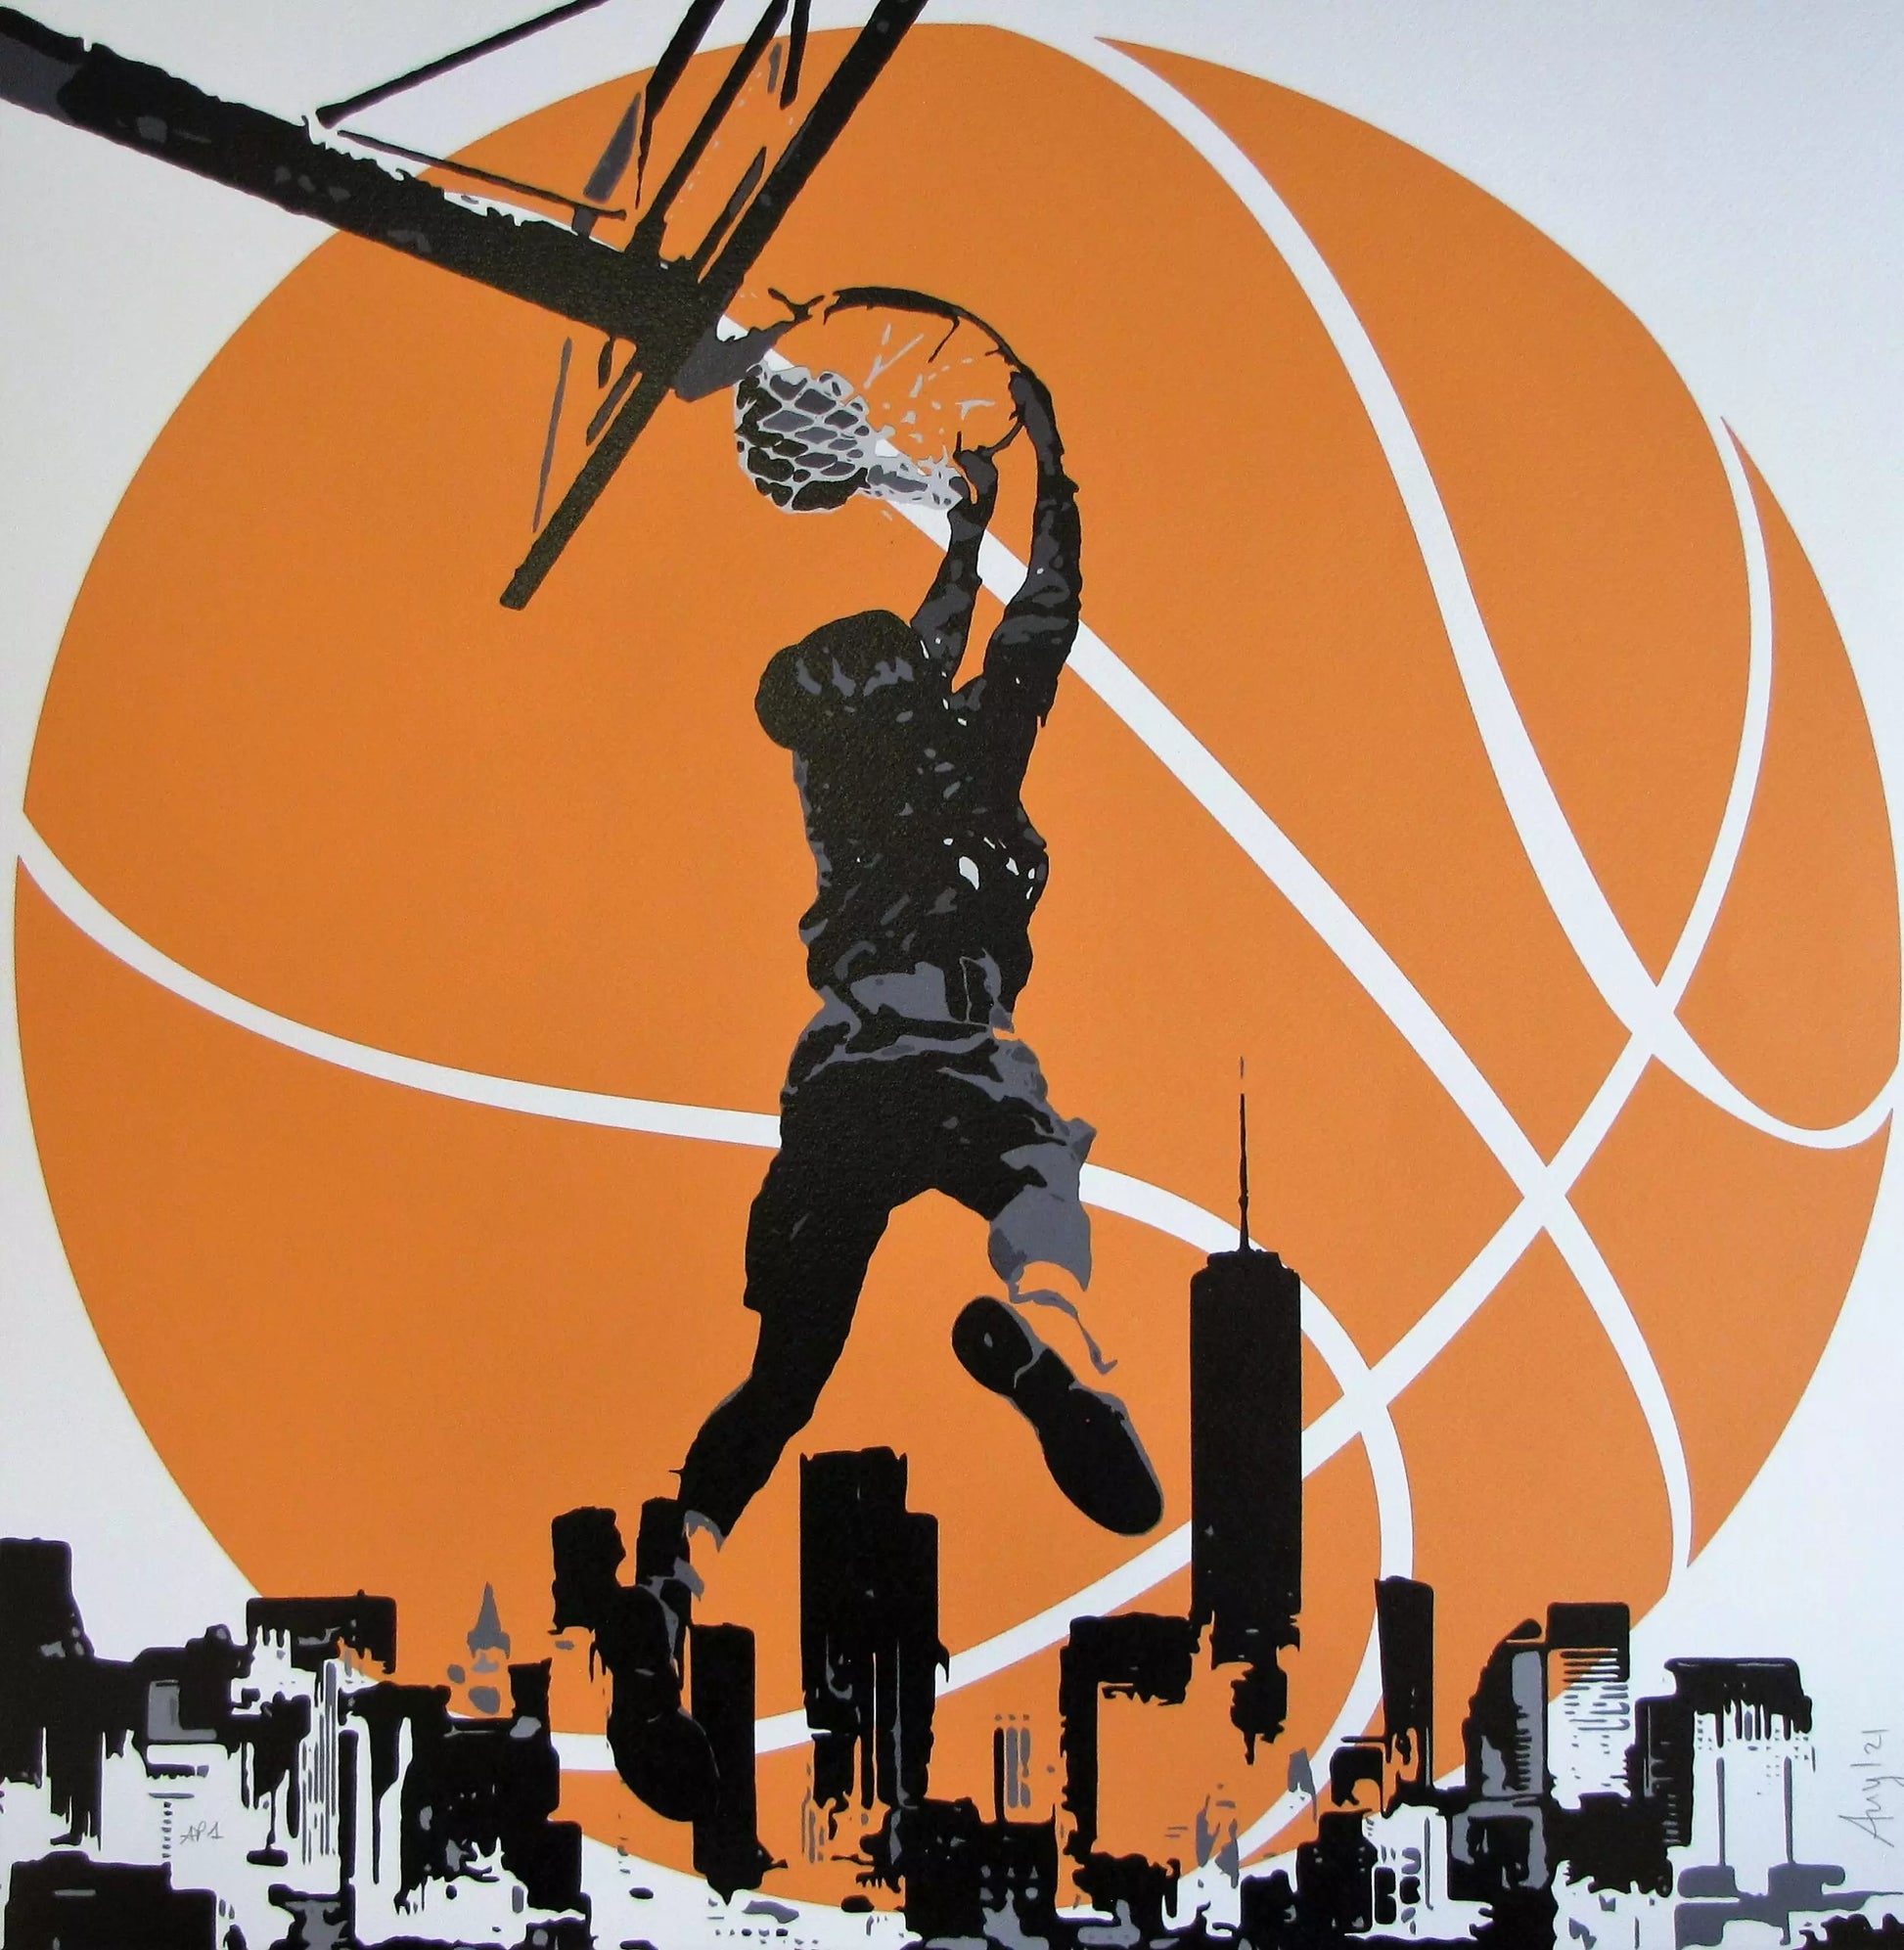 The Game Of Life di Any. Stampa Giclée stampa su carta 320 gsm edizione limitata rappresentante un cestista che gioca nella città di New York | Cd Studio d'Arte